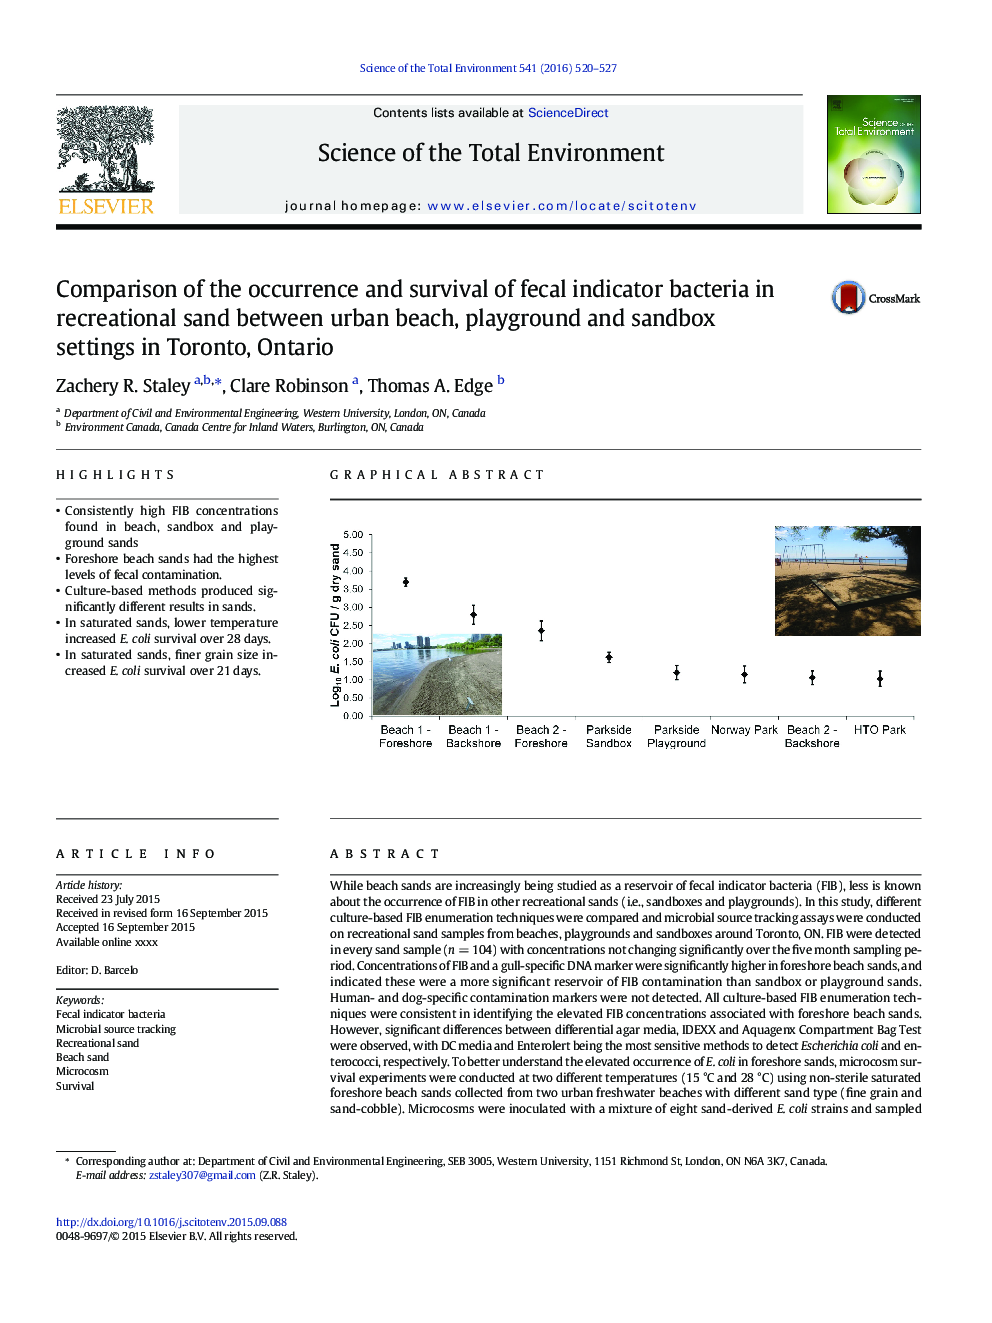 مقایسه وقوع و بقای باکتری های شاخص مدفوع در شن و ماسه تفریحی بین ساحل شهری، زمین بازی و امکانات ماسهبازی در تورنتو، انتاریو 